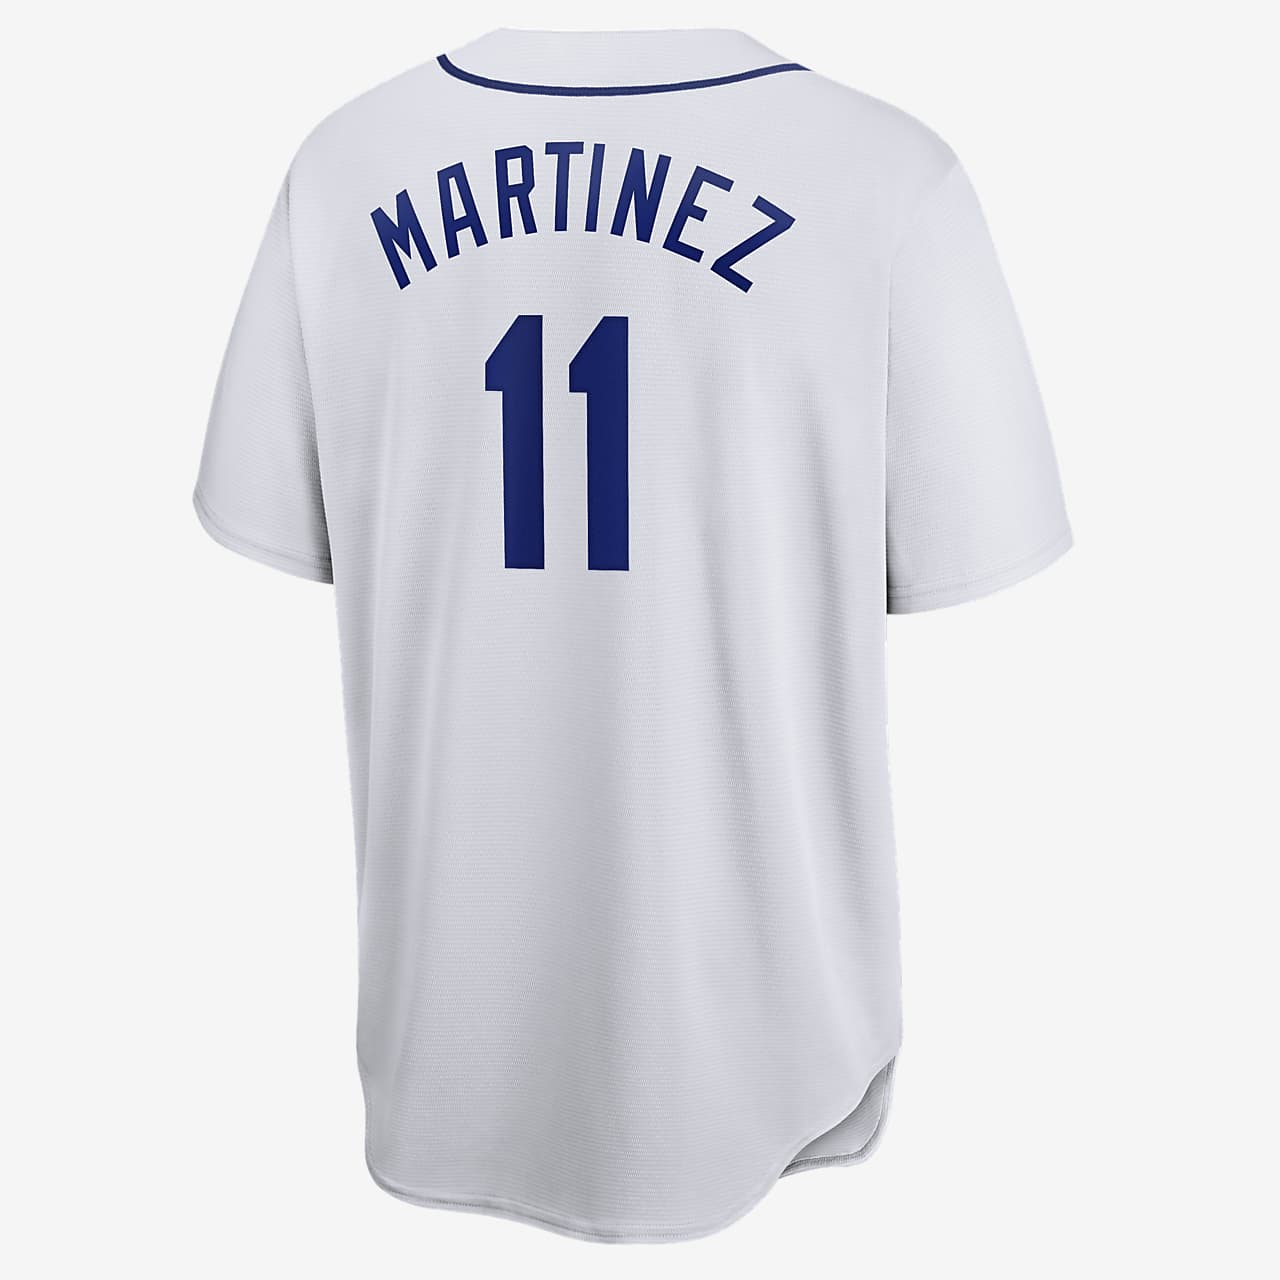 seattle mariners baseball jersey